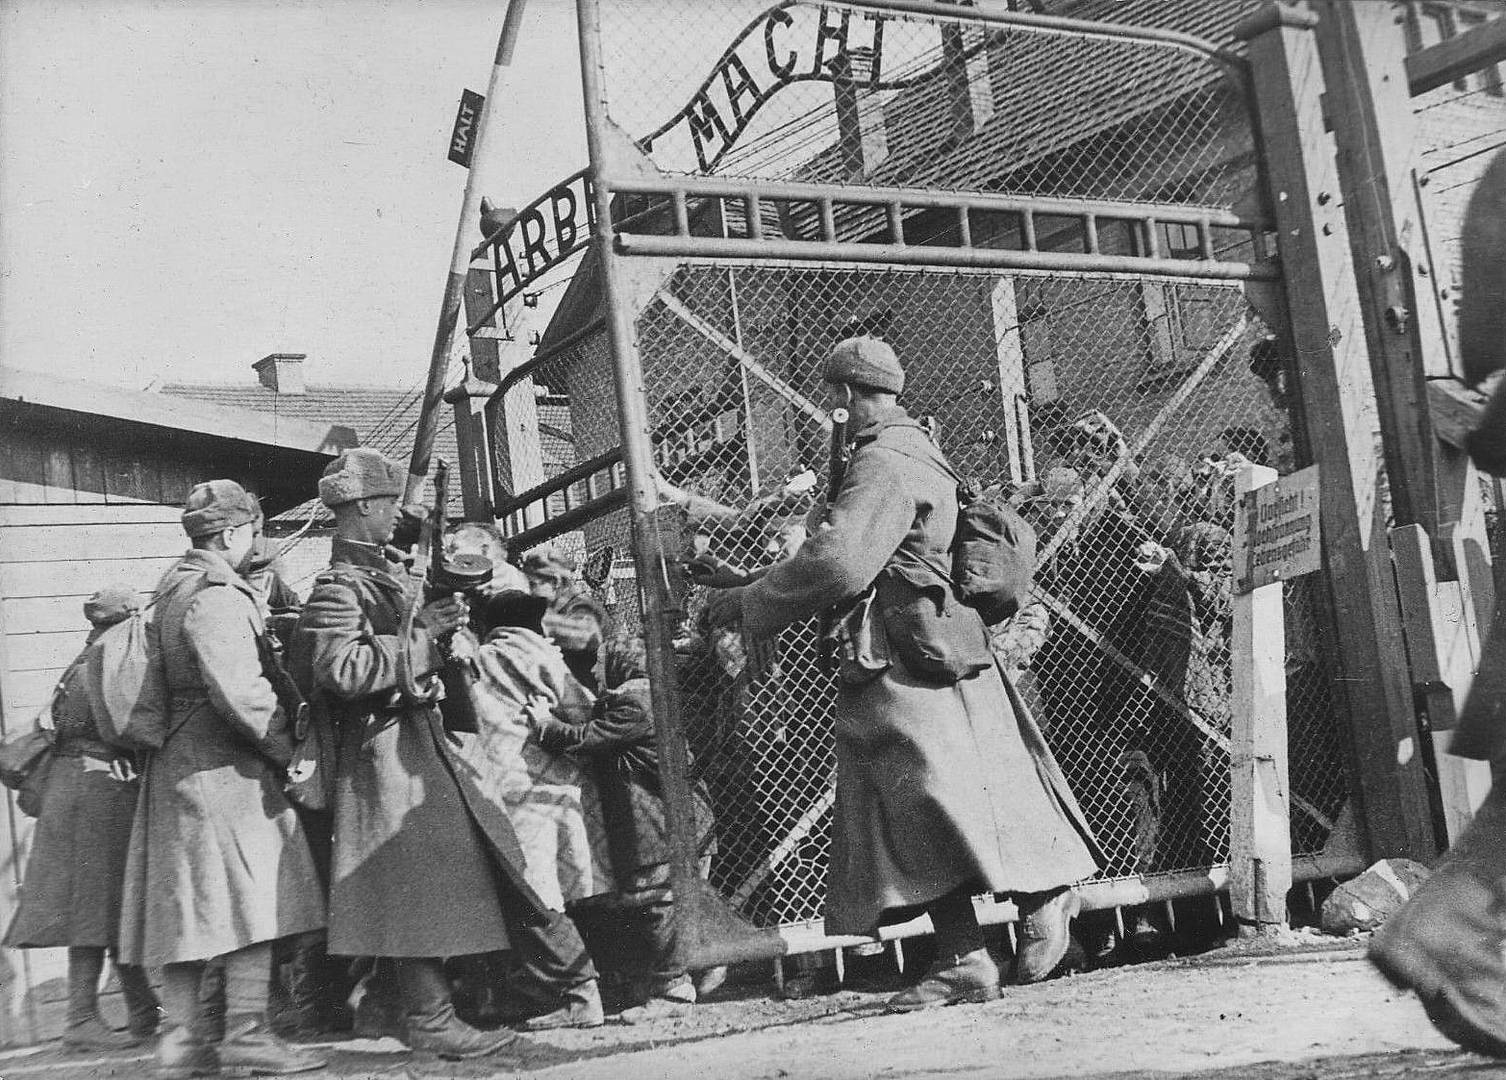 Советские солдаты открывают ворота концлагеря Освенцим (Аушвиц 1), освобождая заключенных. 27 января 1945 г.